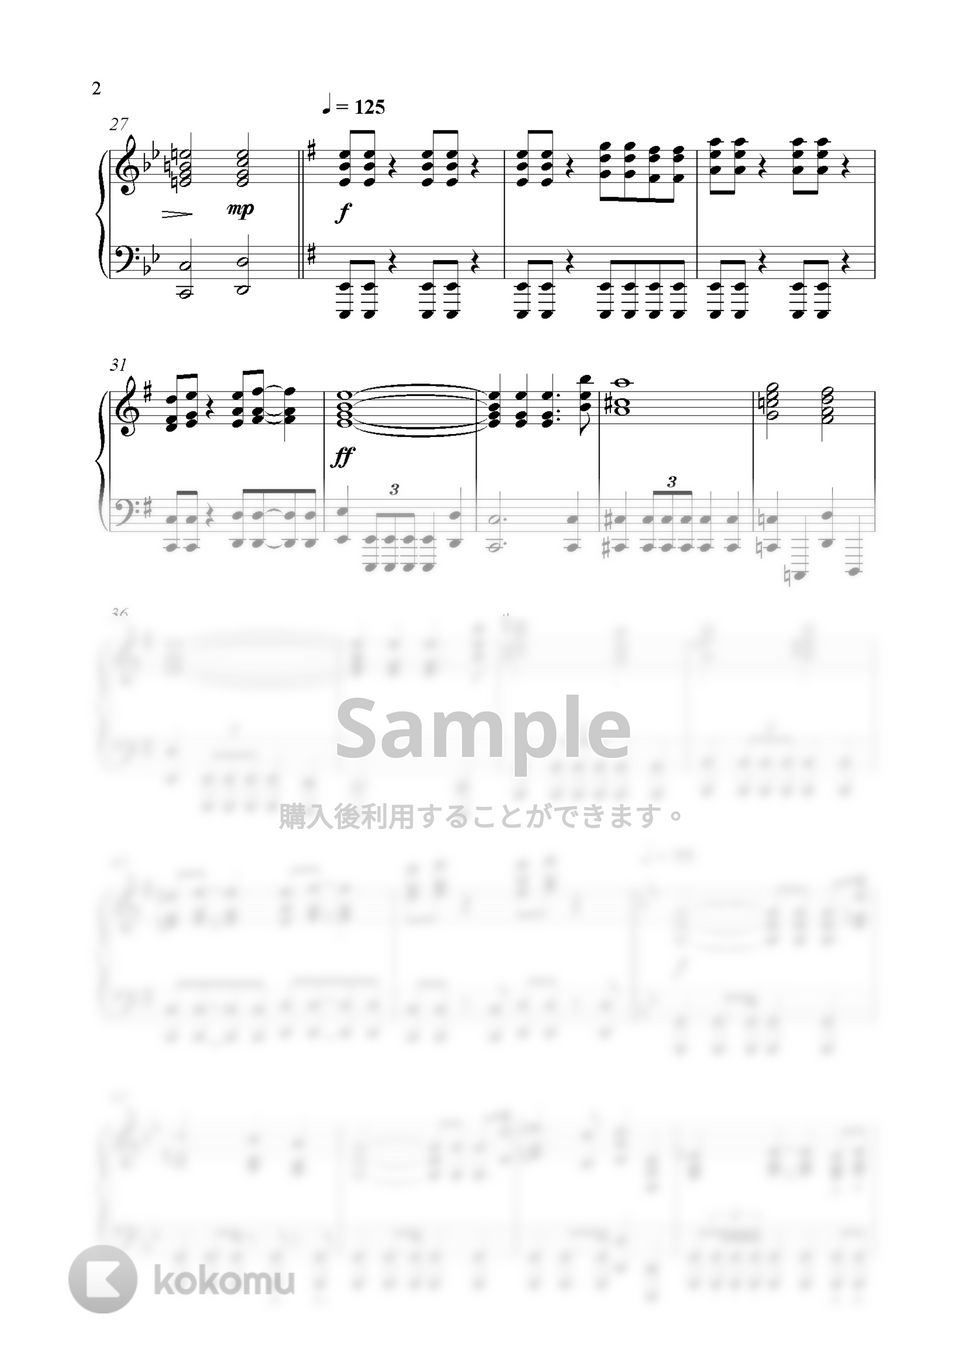 Alan Silvestri - Portals(アベンジャーズ/エンドゲーム) (Piano Version) by GoGoPiano